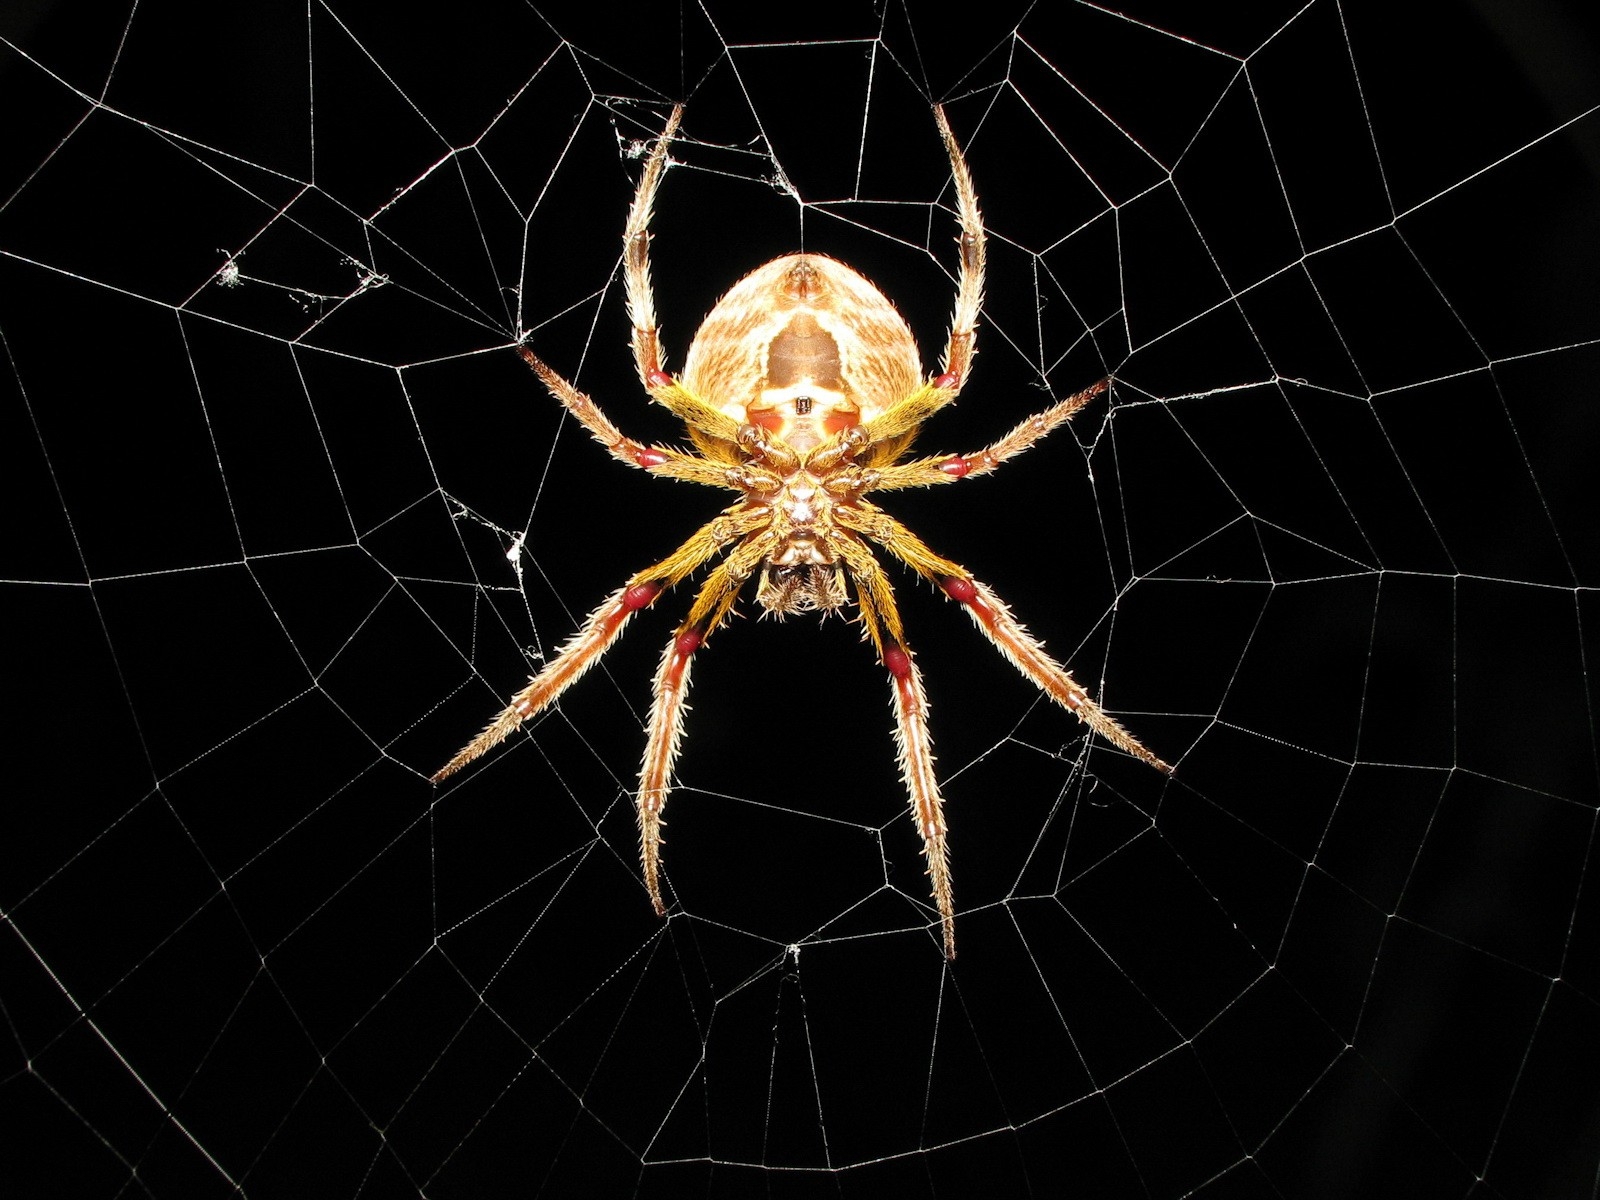 spiders spider webs arachnids 1600x1200 wallpaper High Quality Wallpaper, High Definition Wallpaper